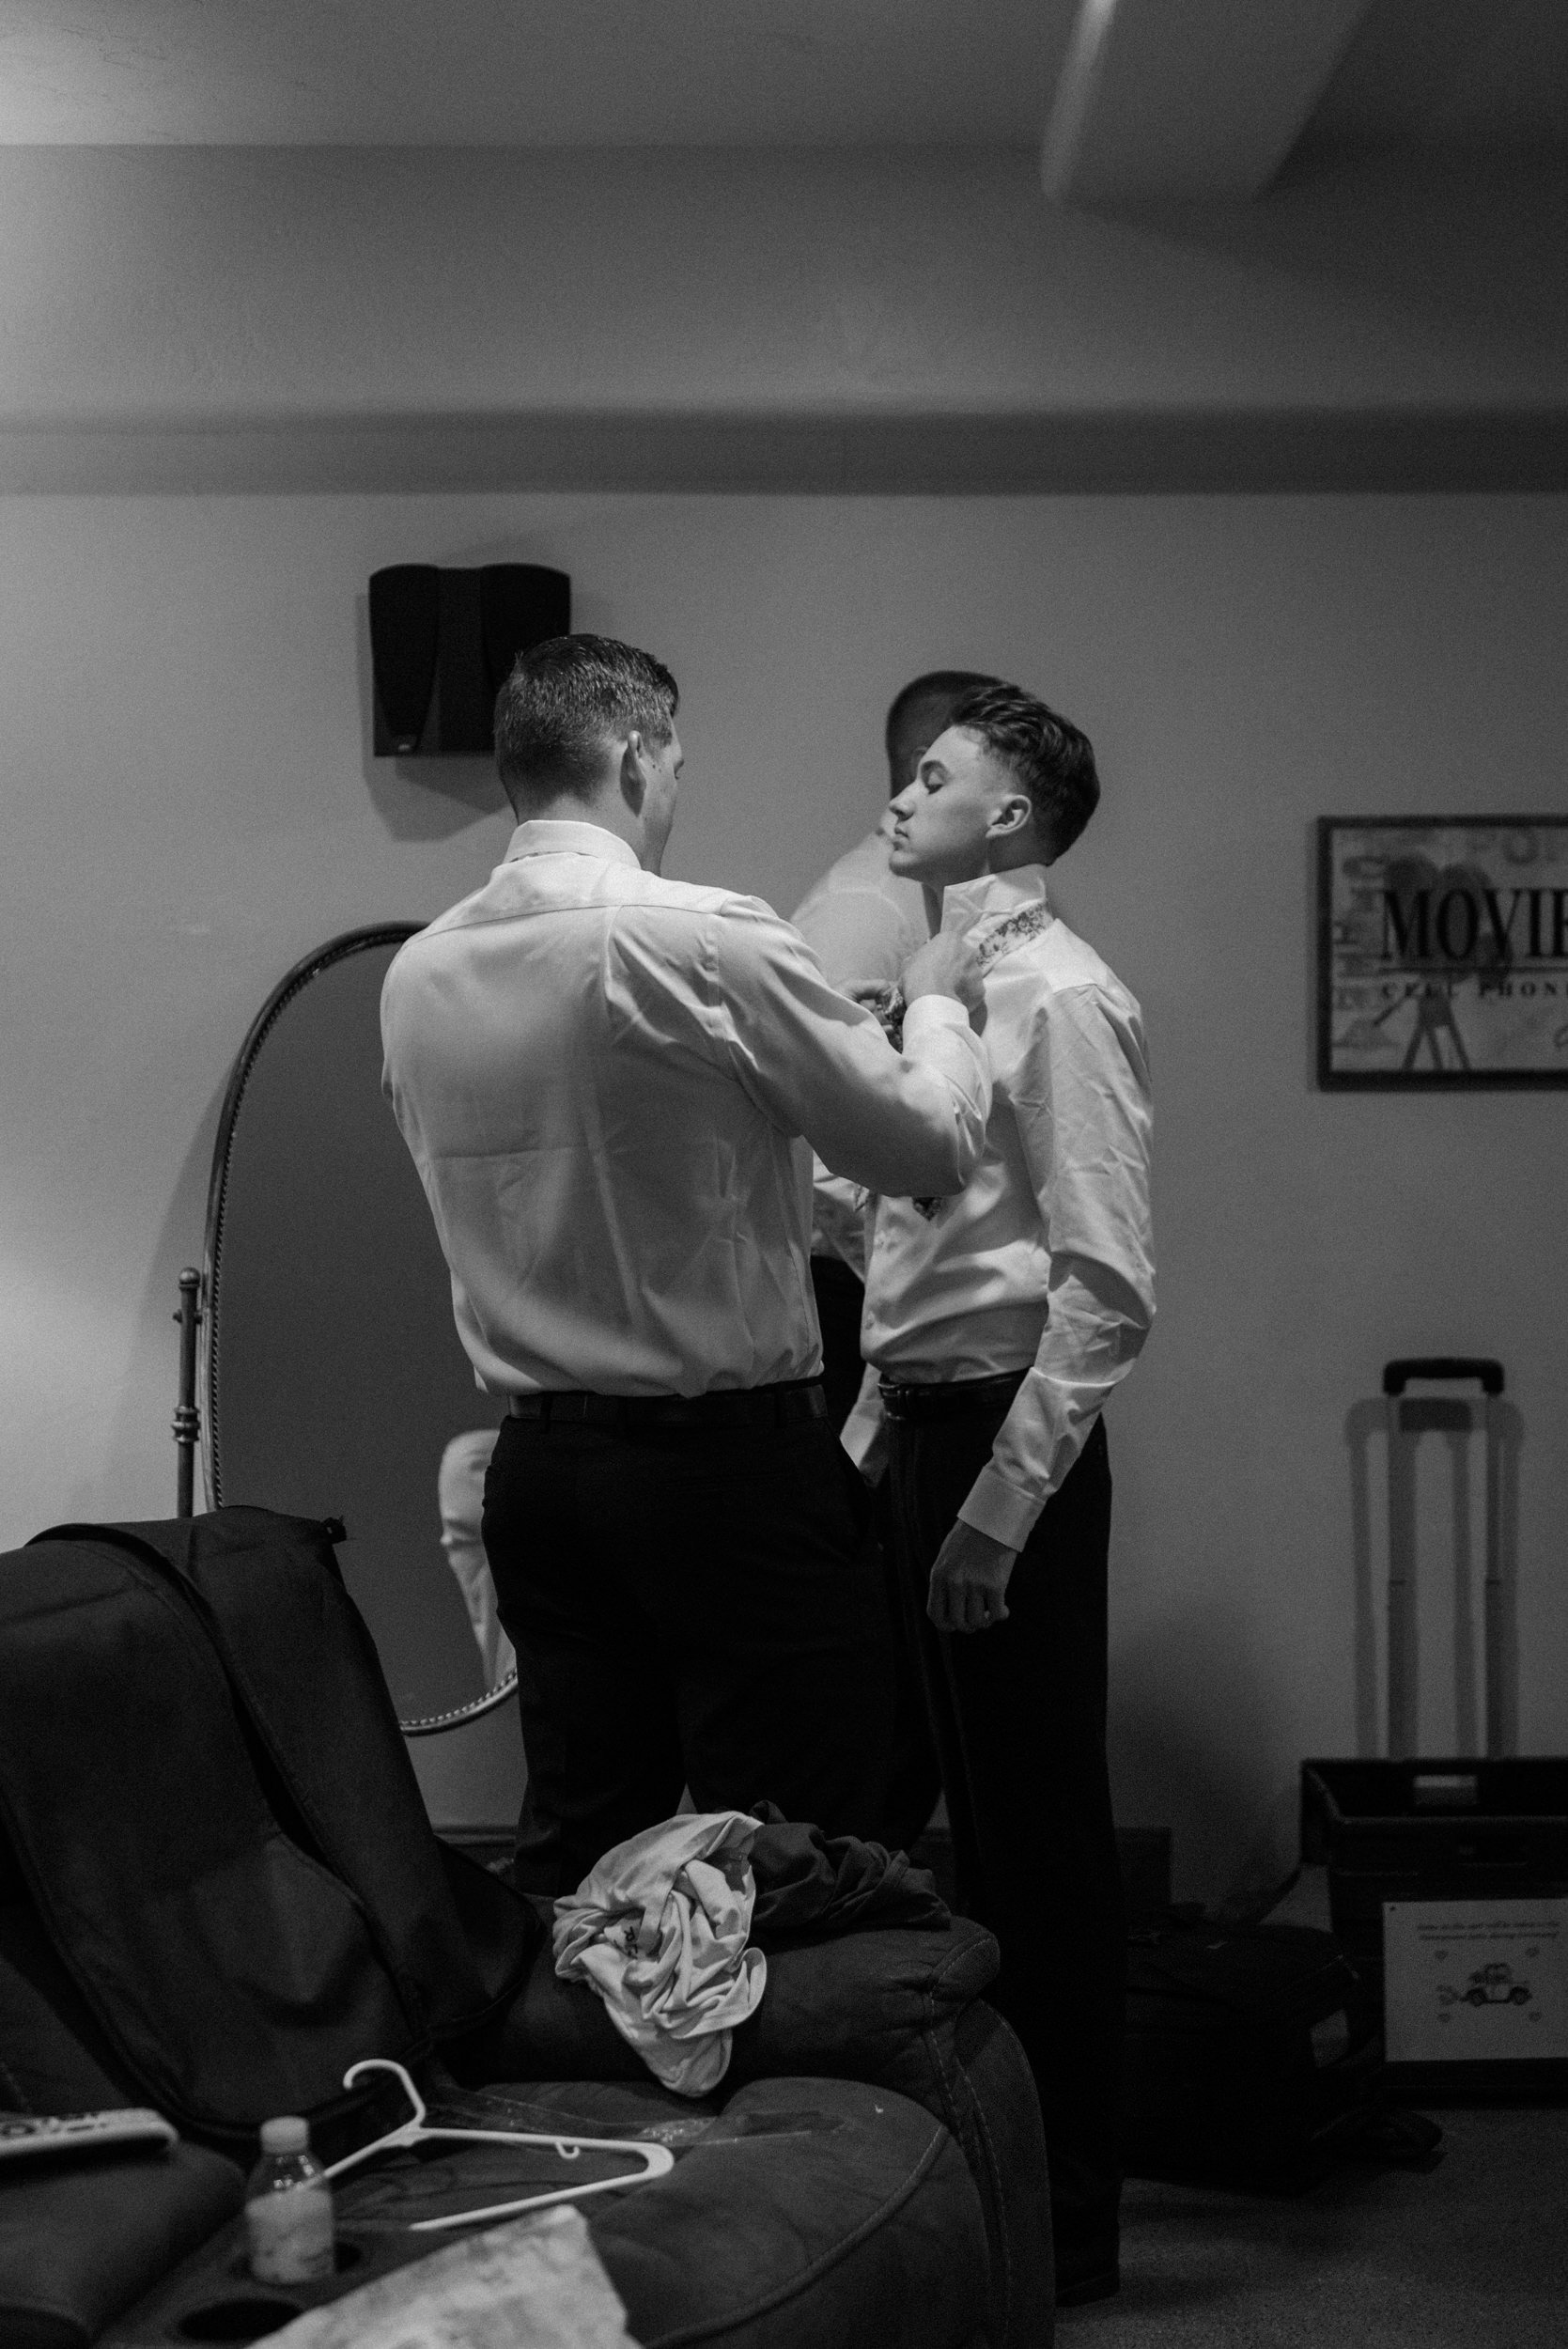 The groom helps a groomsmen tie their tie